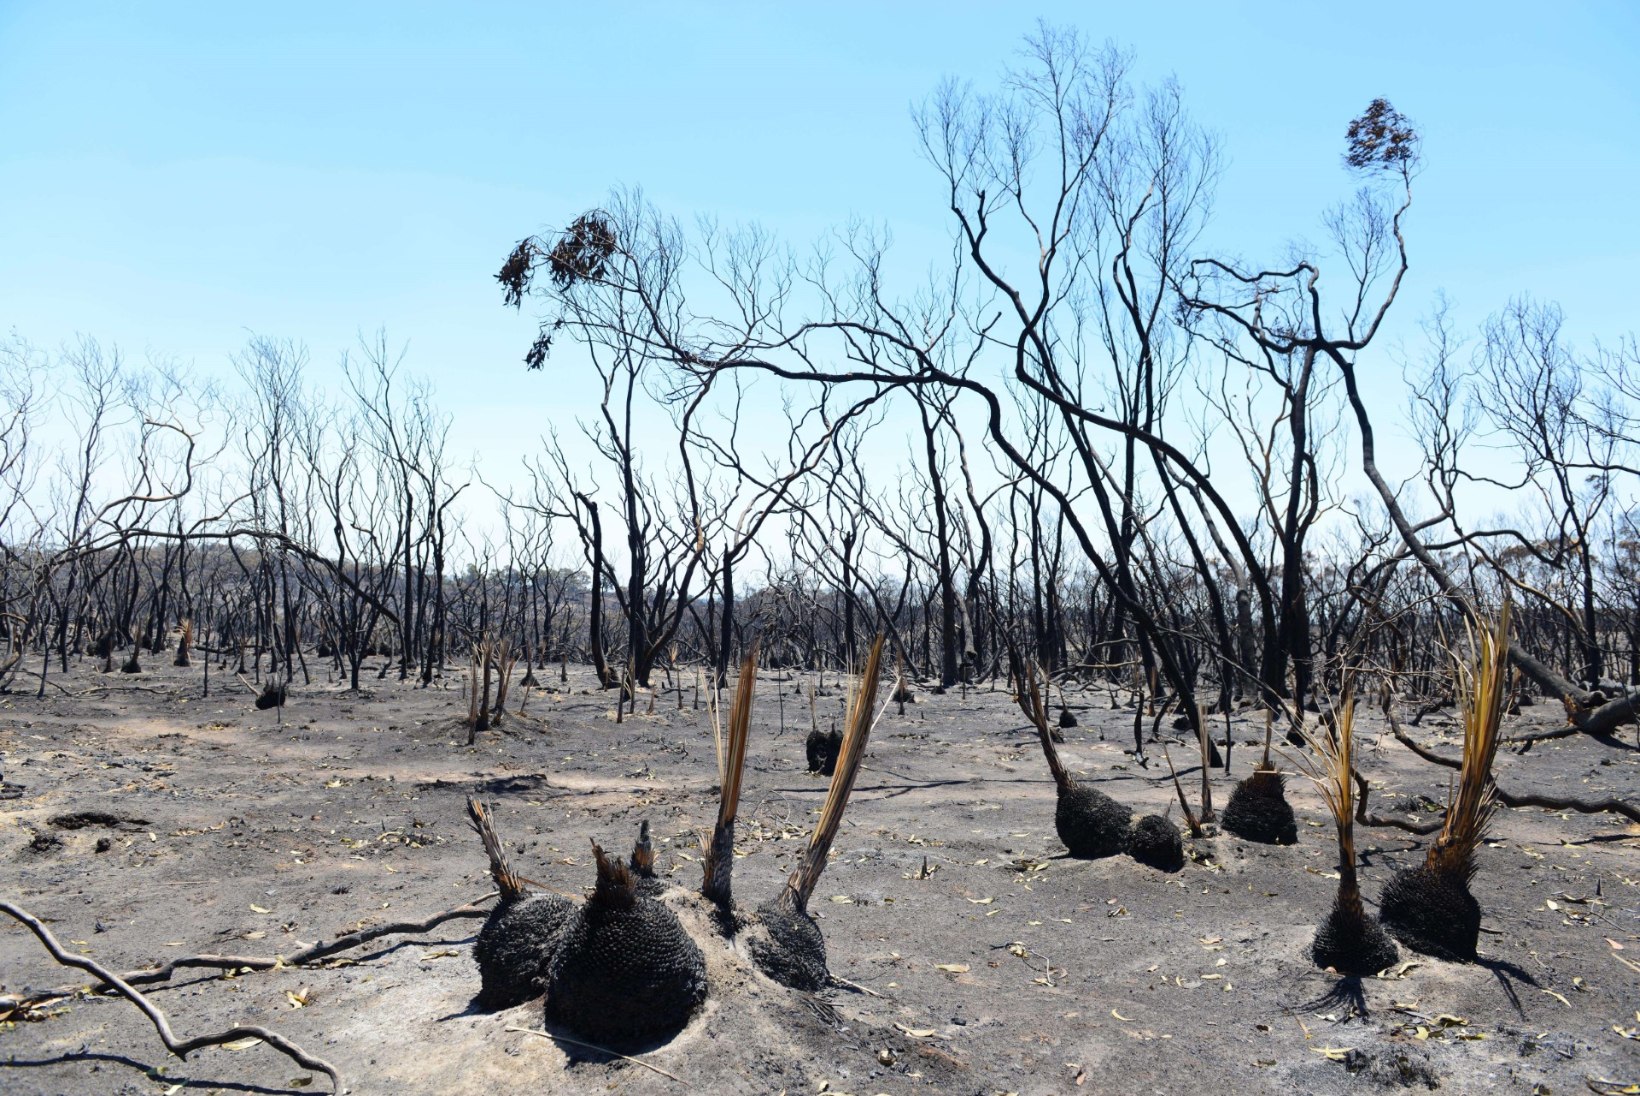 GALERII: Austraaliat räsivad maastikupõlengud, mida peetakse üle aastakümnete kõige laiaulatuslikumateks